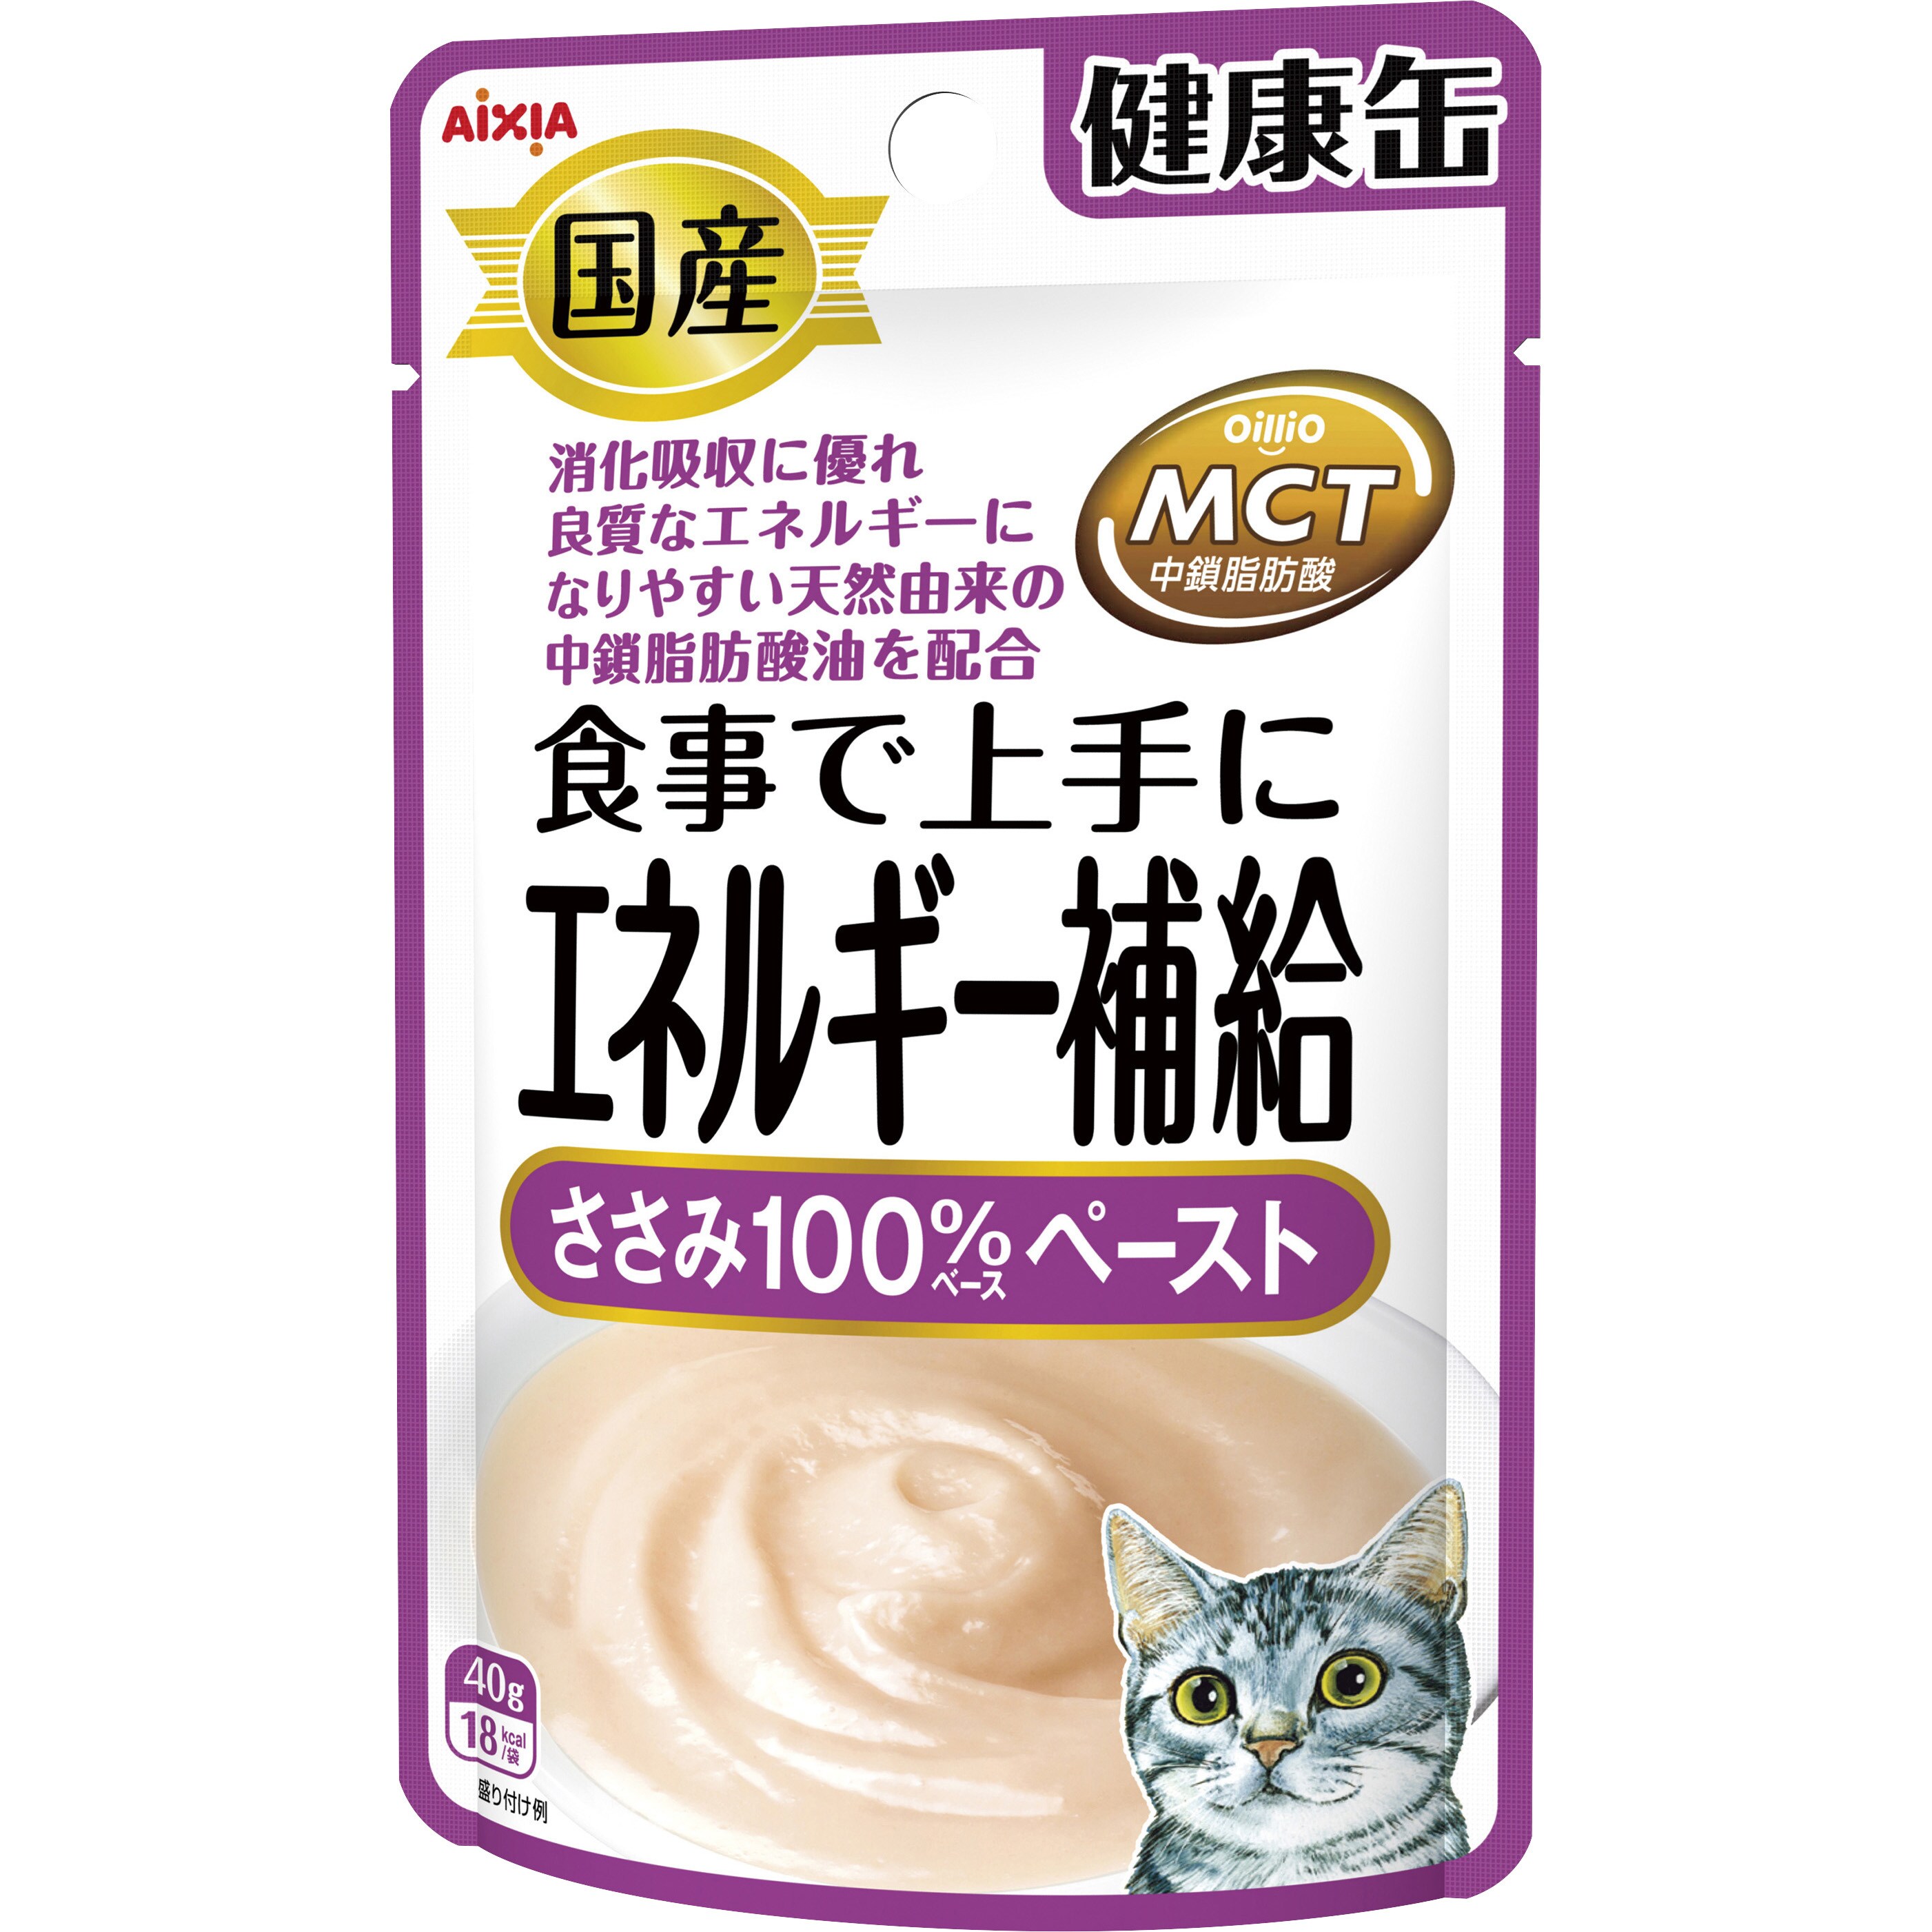 シニア猫用 健康缶パウチ エイジングケア 40g×12コ